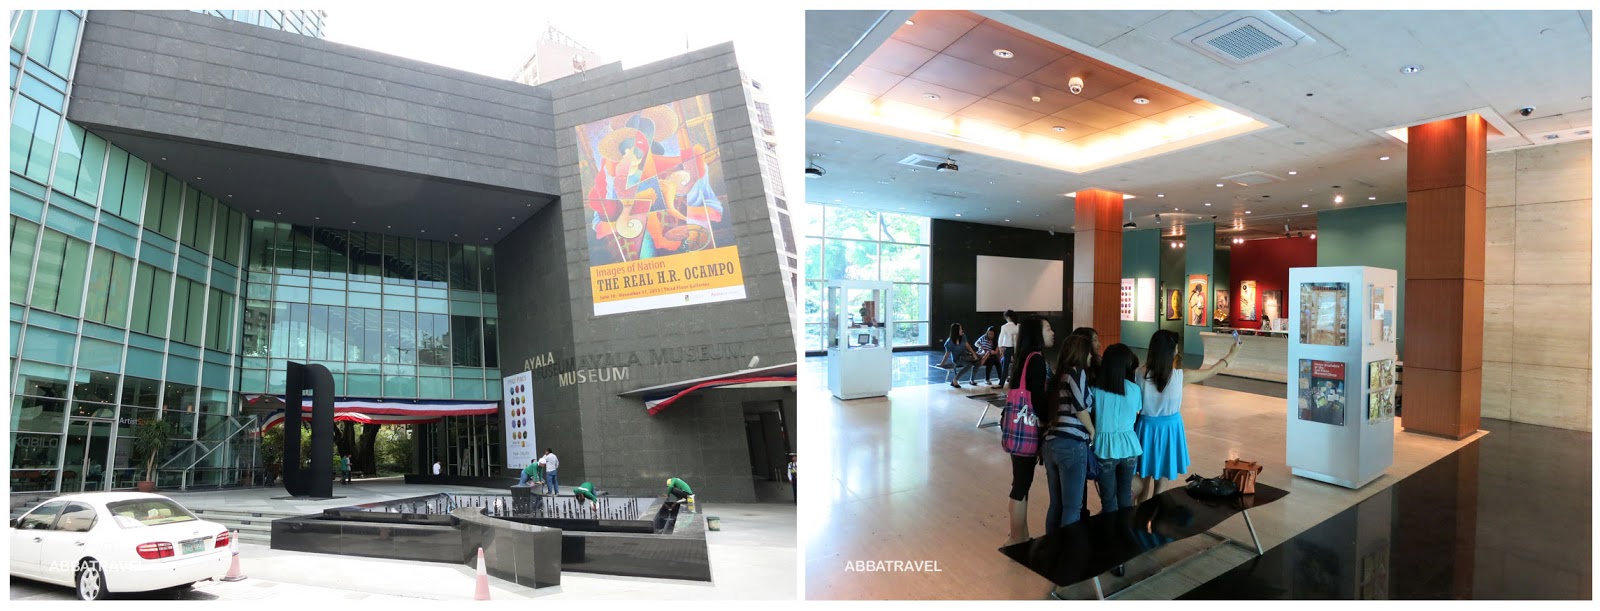 Louis Vuitton - San Lorenzo - G/F, Greenbelt 4, Ayala Center, Makati Avenue